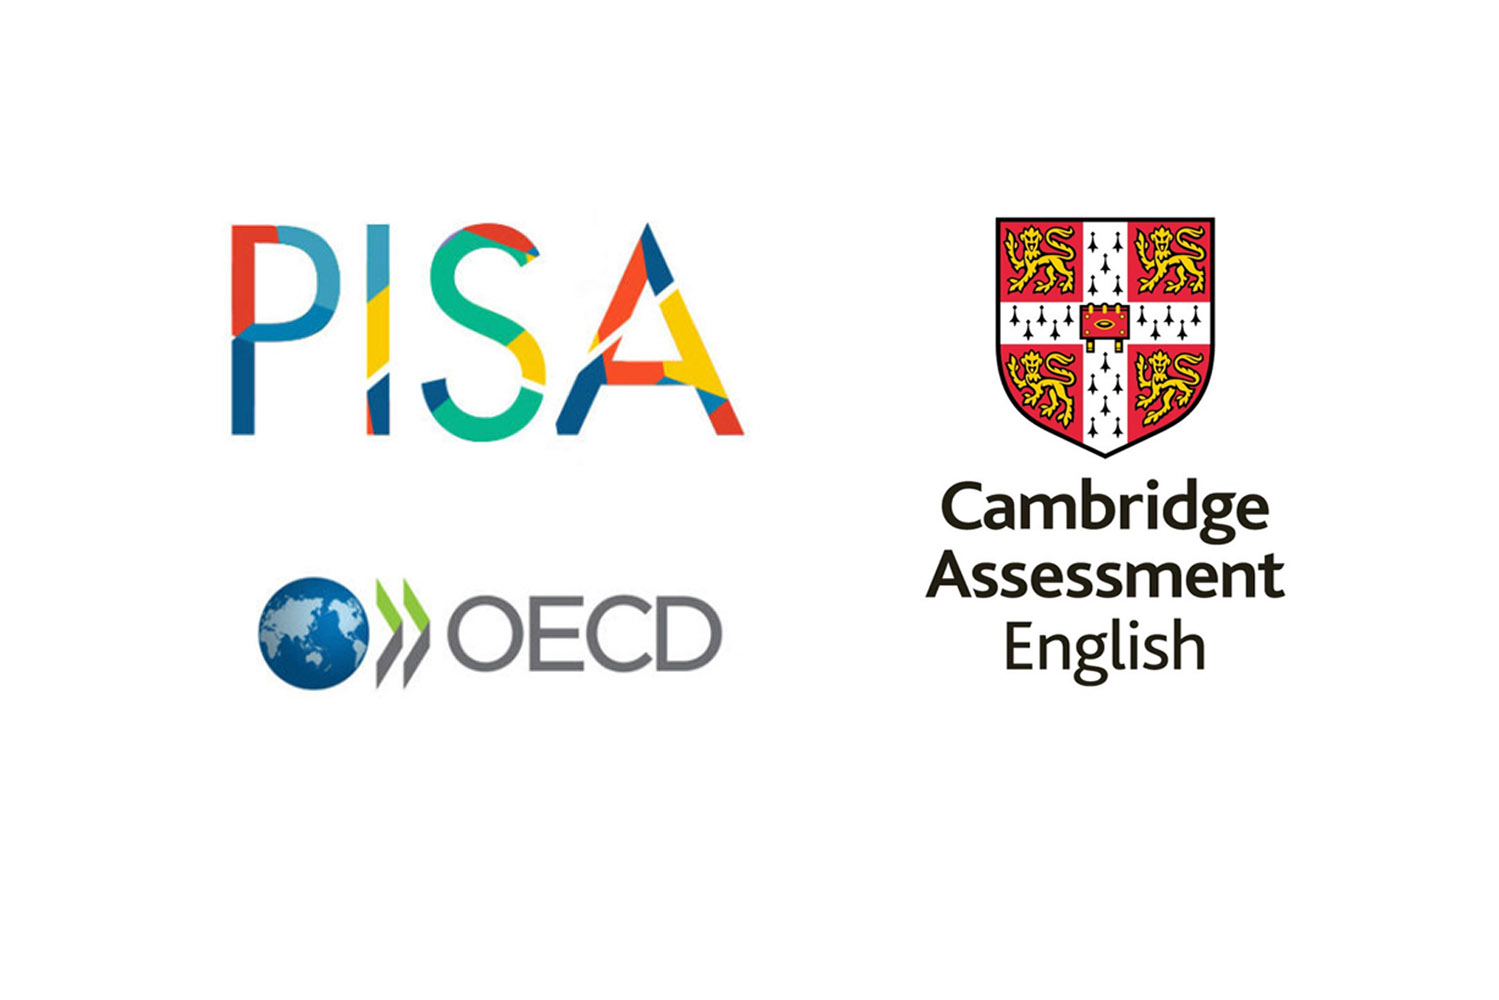 Hội Đồng khảo thí Tiếng Anh Cambridge hợp tác với OECD để hỗ trợ đánh giá PISA